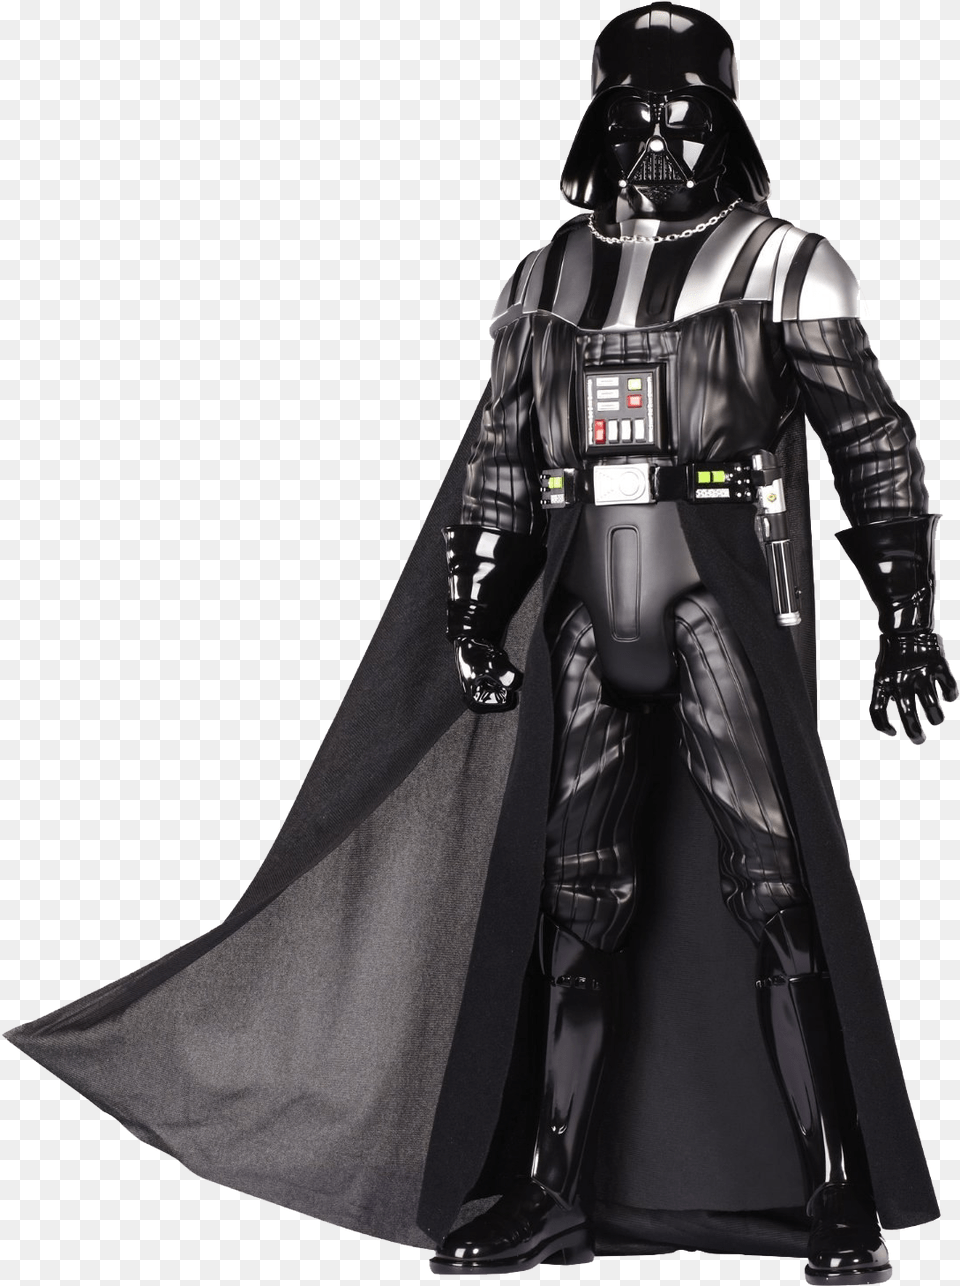 Darth Vader Background Star Wars Darth Vader Figur, Clothing, Glove, Adult, Female Png